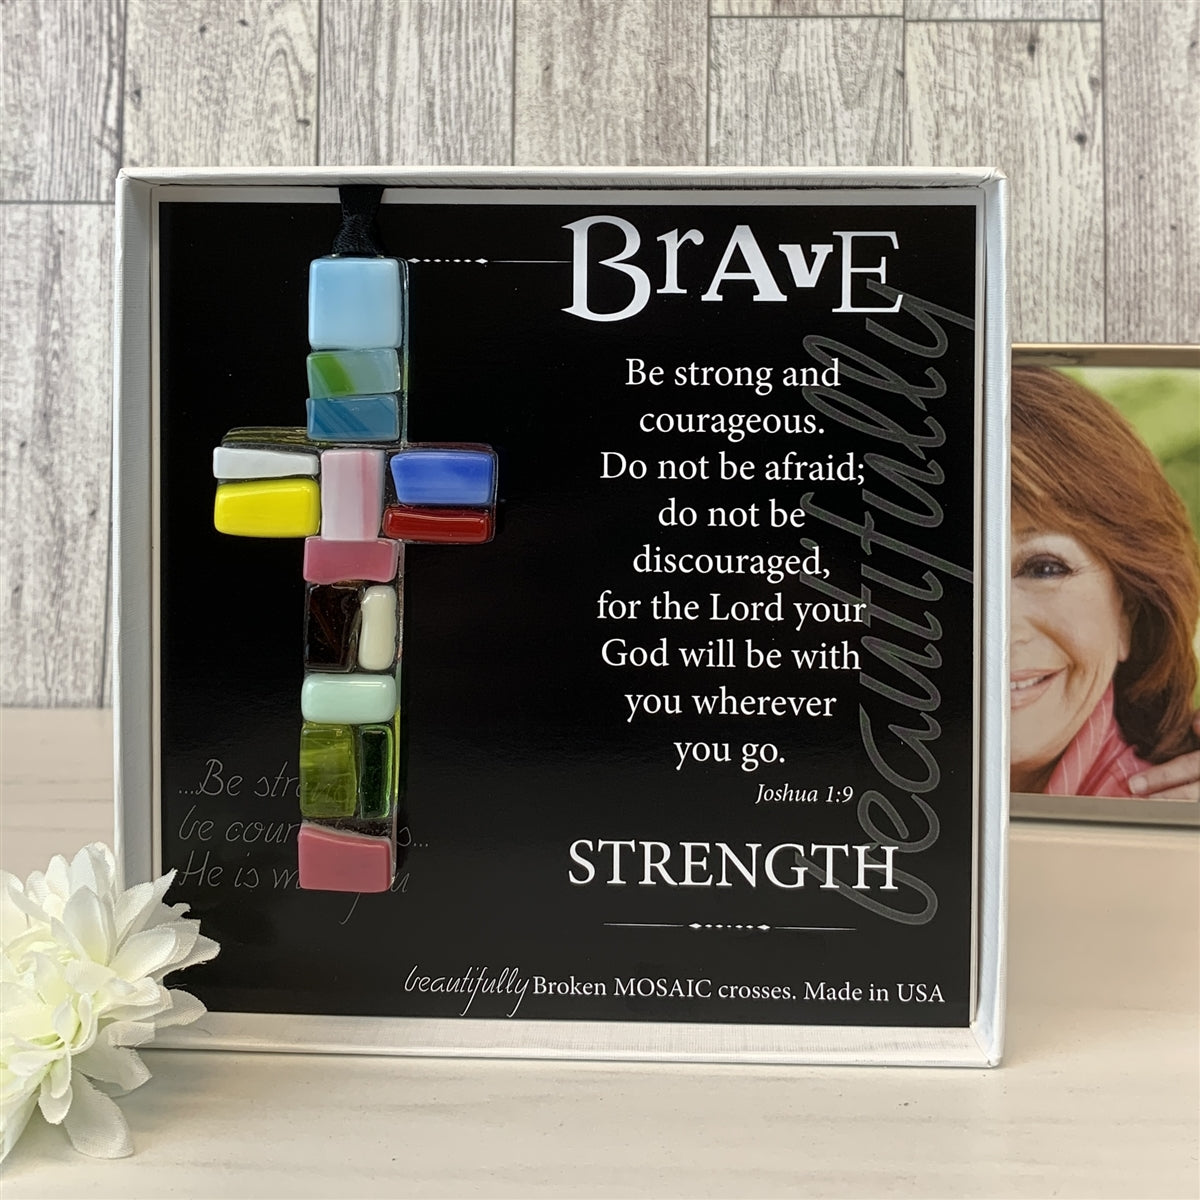 Brave Cross in gift box.